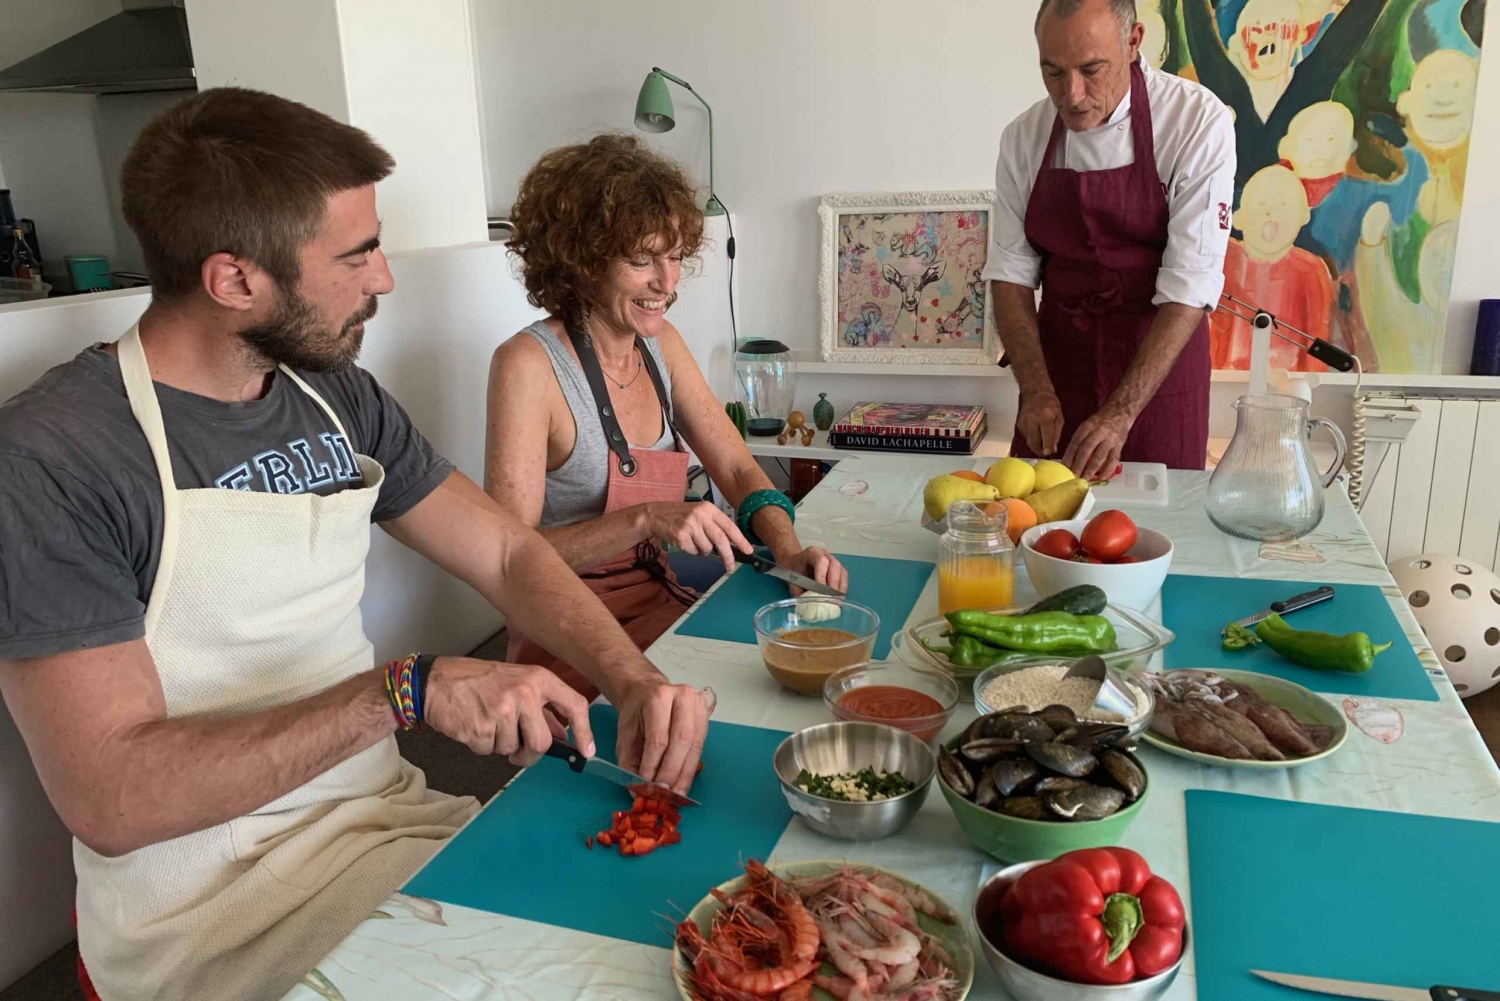 Cours de maître sur la paella et les fruits de mer à Barcelone